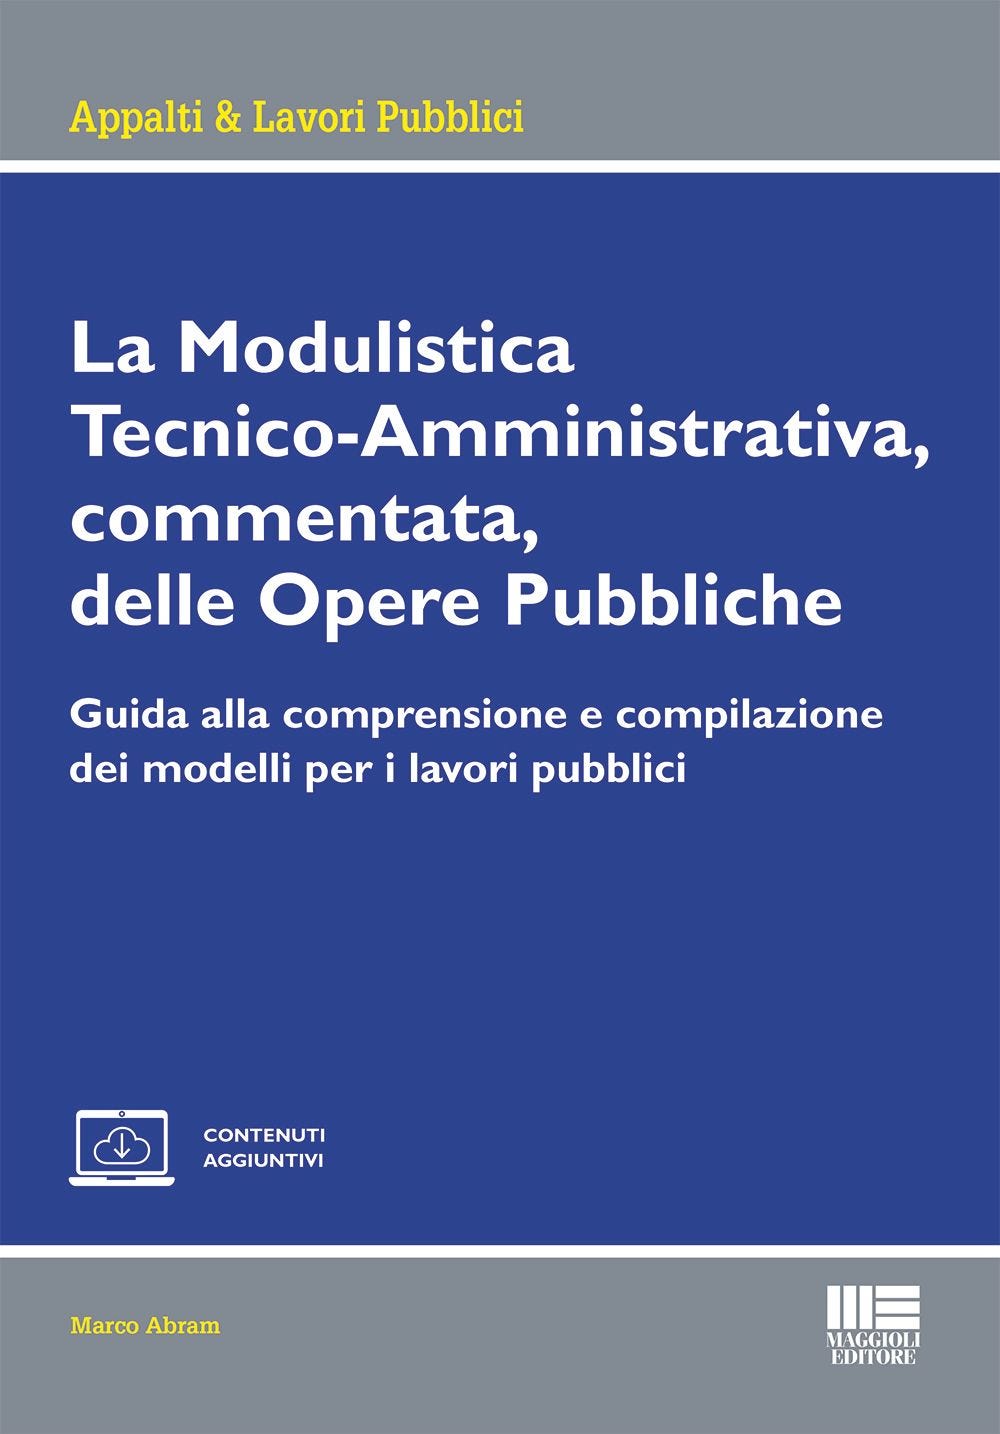 La Modulistica Tecnico-Amministrativa, commentata, delle Opere Pubbliche